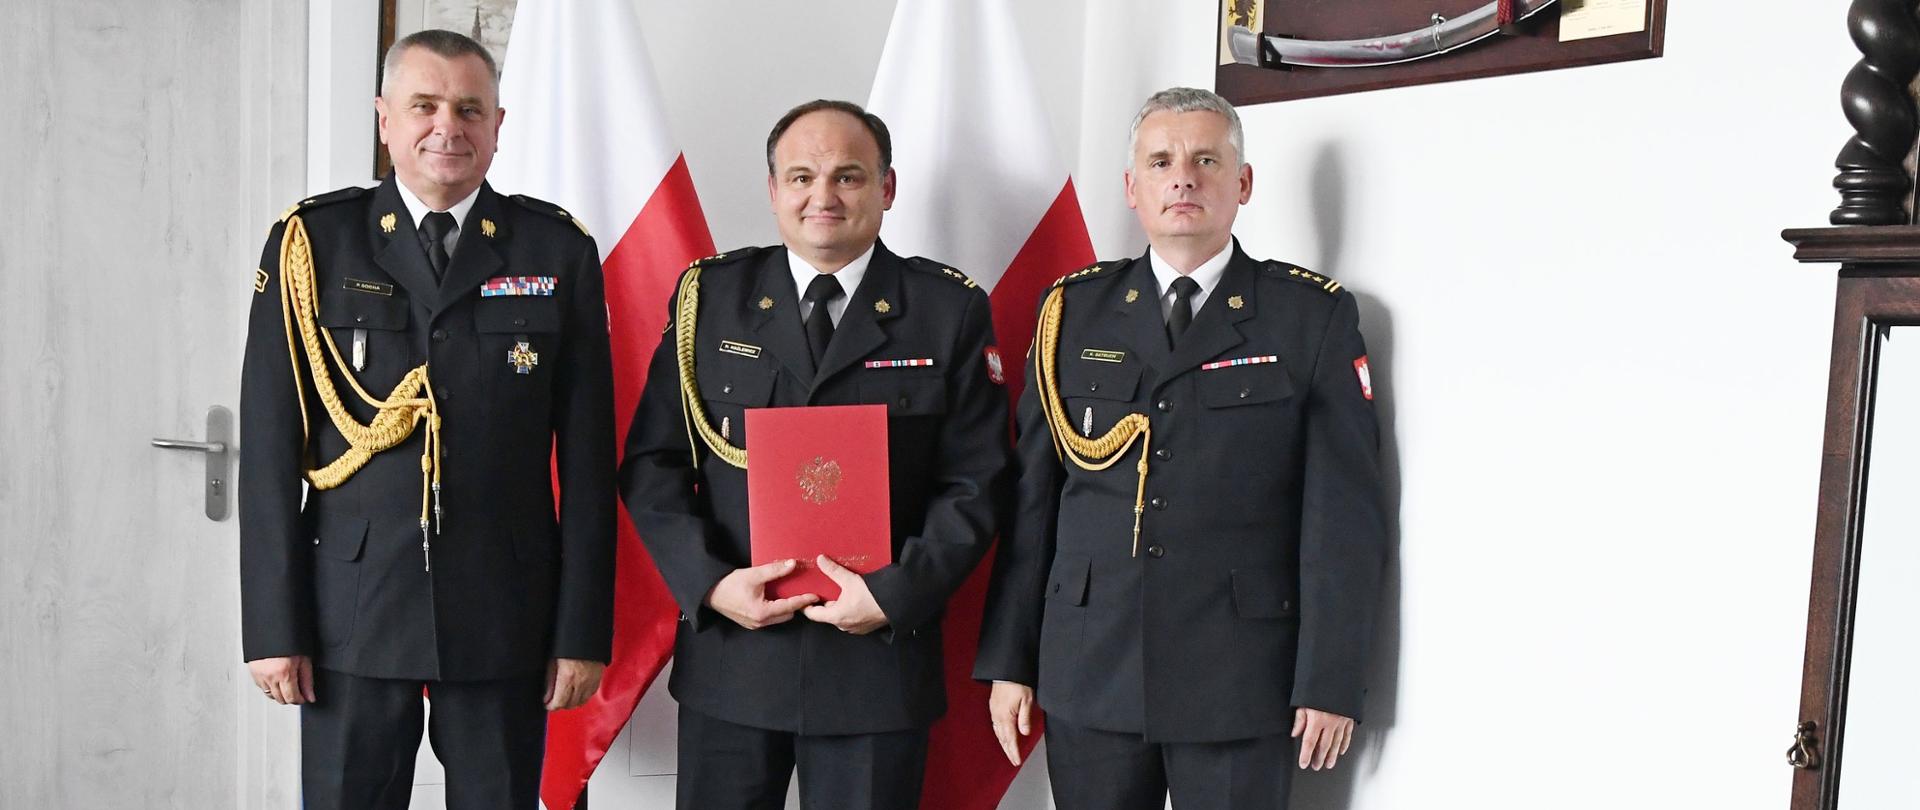 Trzech funkcjonariuszy Państwowej Straży Pożarnej stoi obok siebie strażak w środku trzyma czerwoną teczkę za nimi stoją dwie flagi Polski na ścianie wiszą obraz oraz szabla niedaleko stoi zegar.